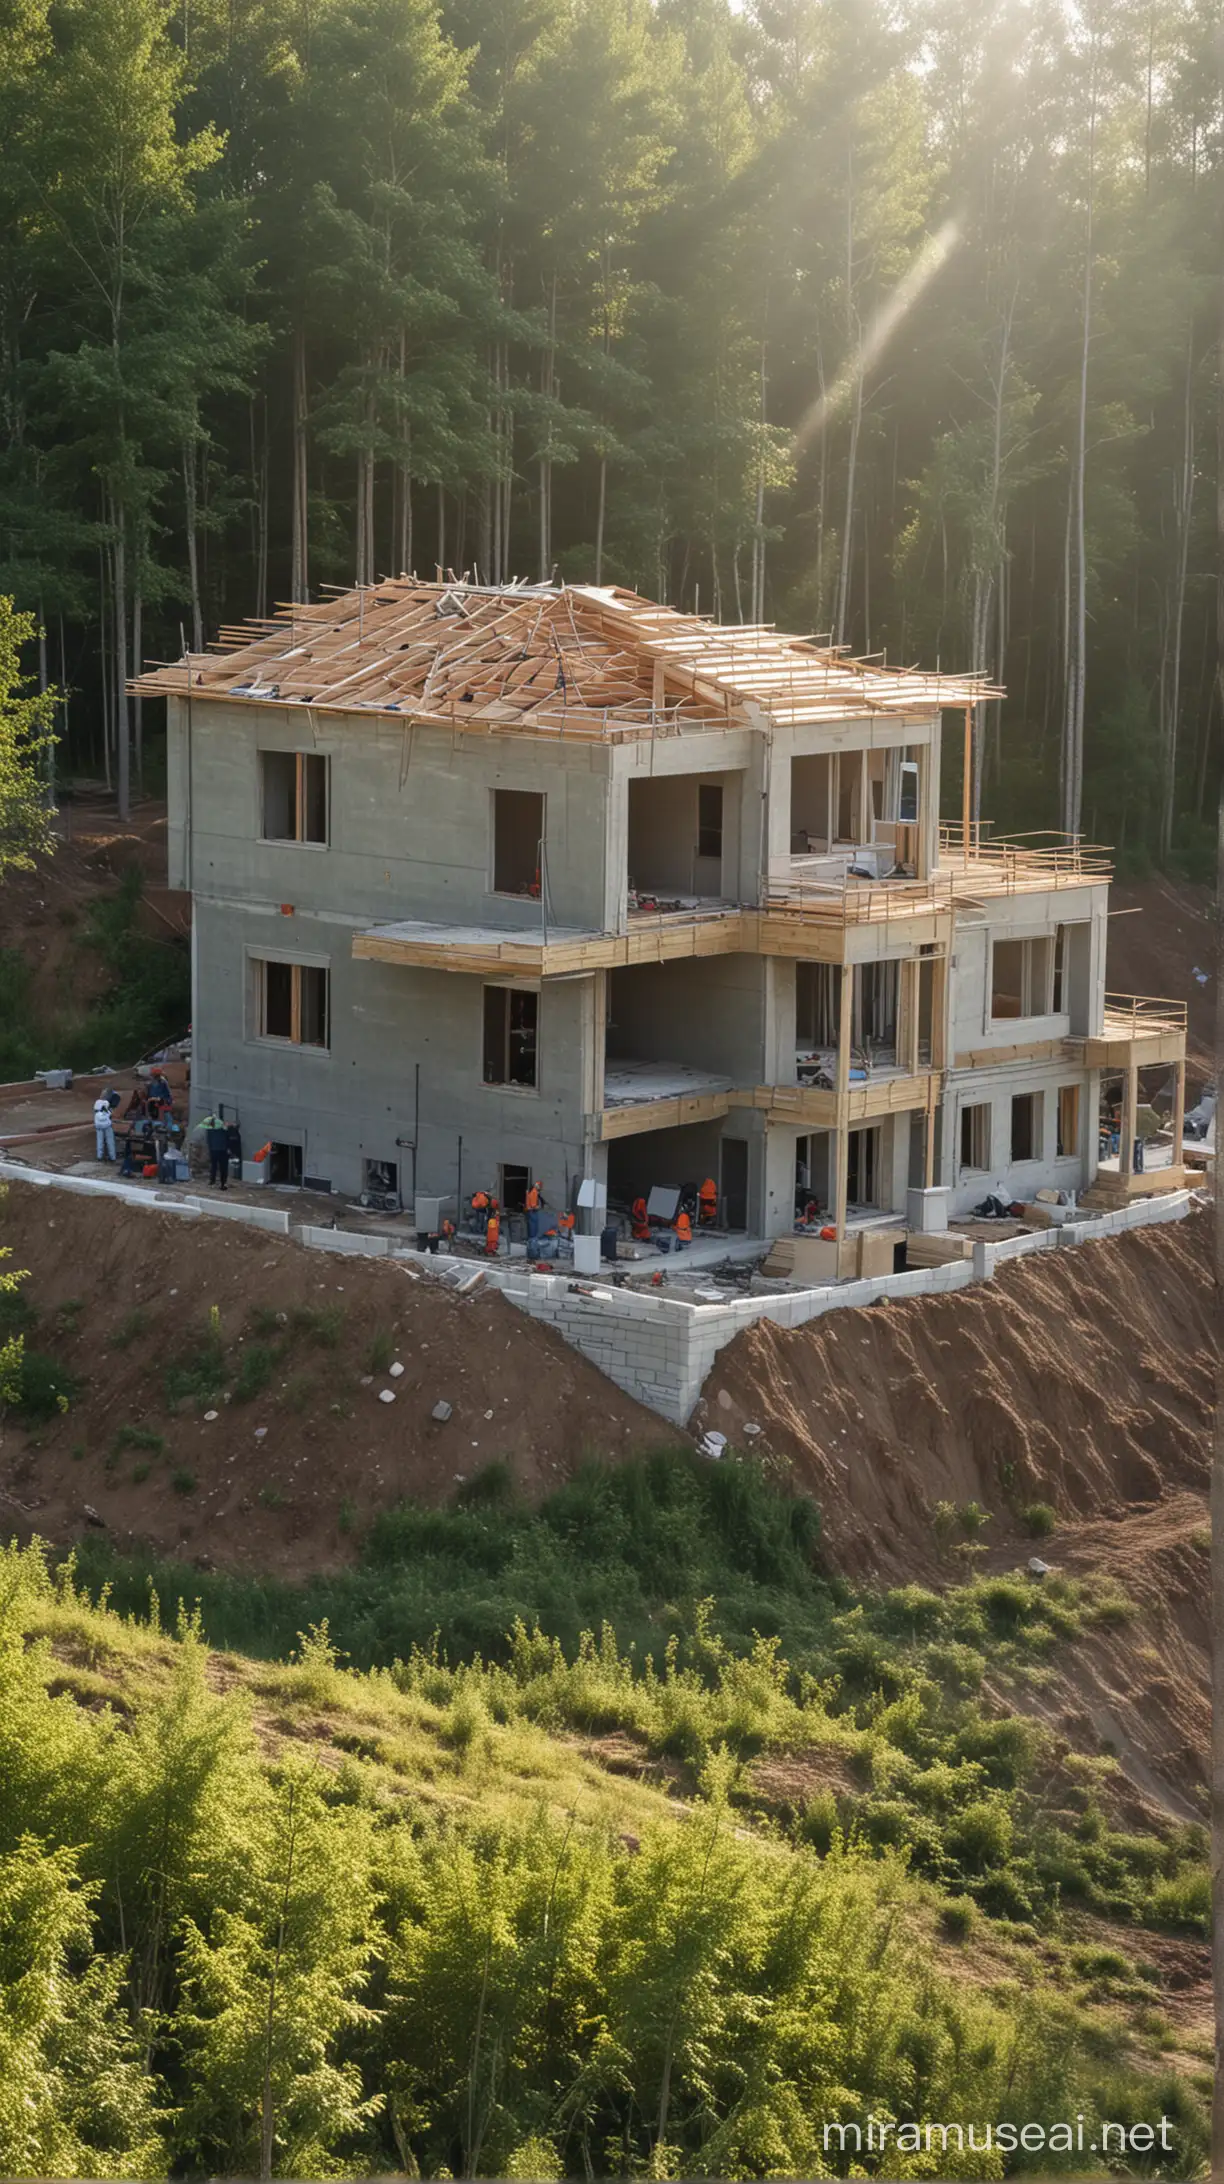 Строительство частного дома на завершающей стадии, зеленый лес, солнце,  дом виден полностью